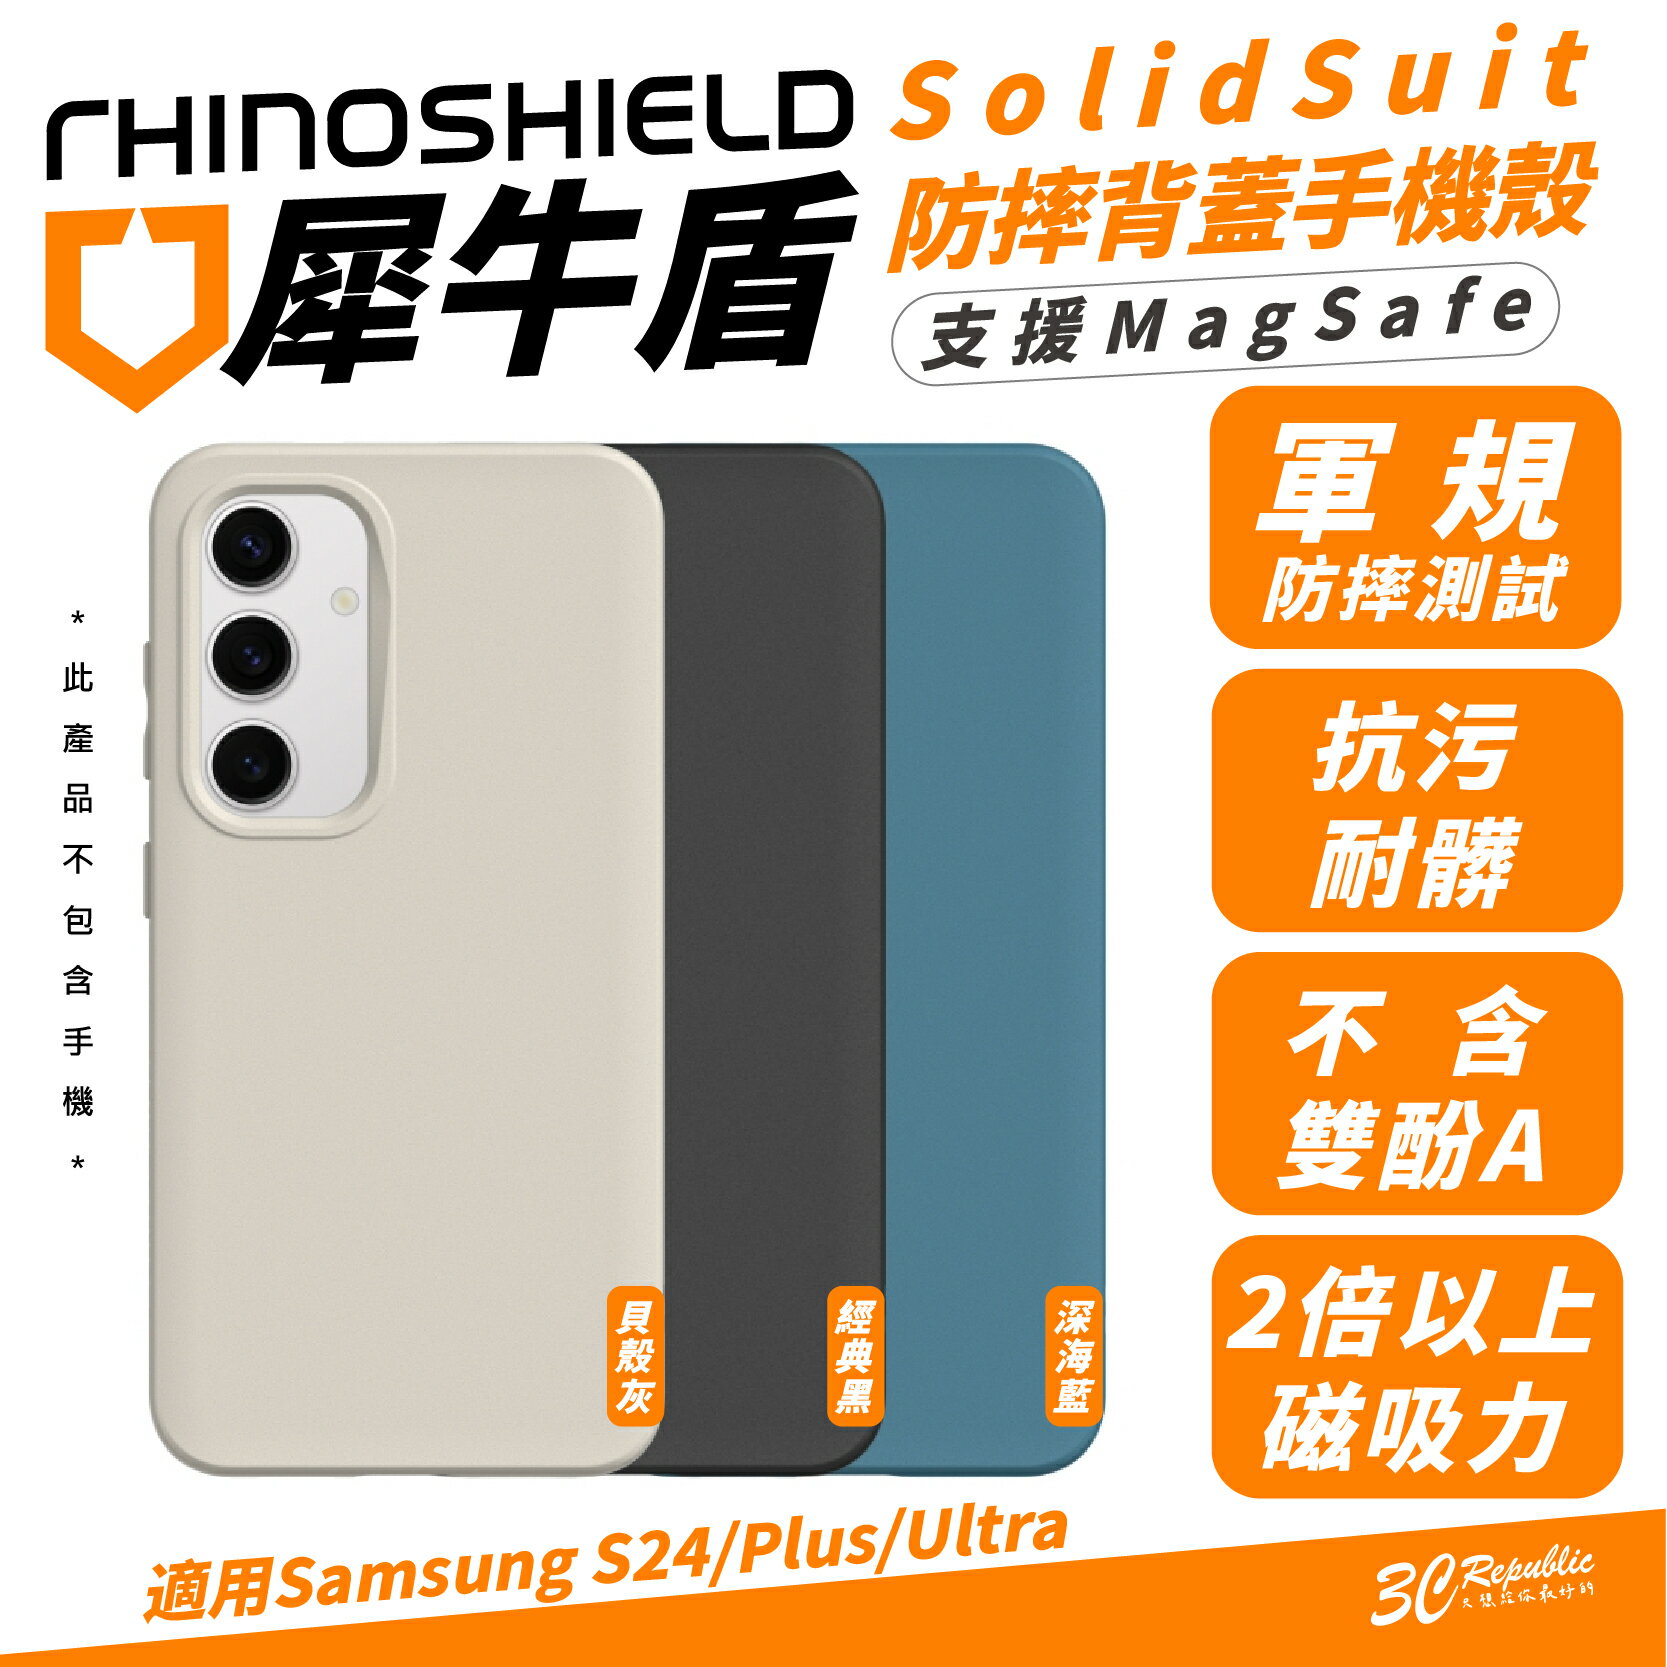 犀牛盾 SolidSuit 手機殼 防摔殼 保護殼 支援 MagSafe 適 Samsung S24 S24+ Plus【APP下單8%點數回饋】